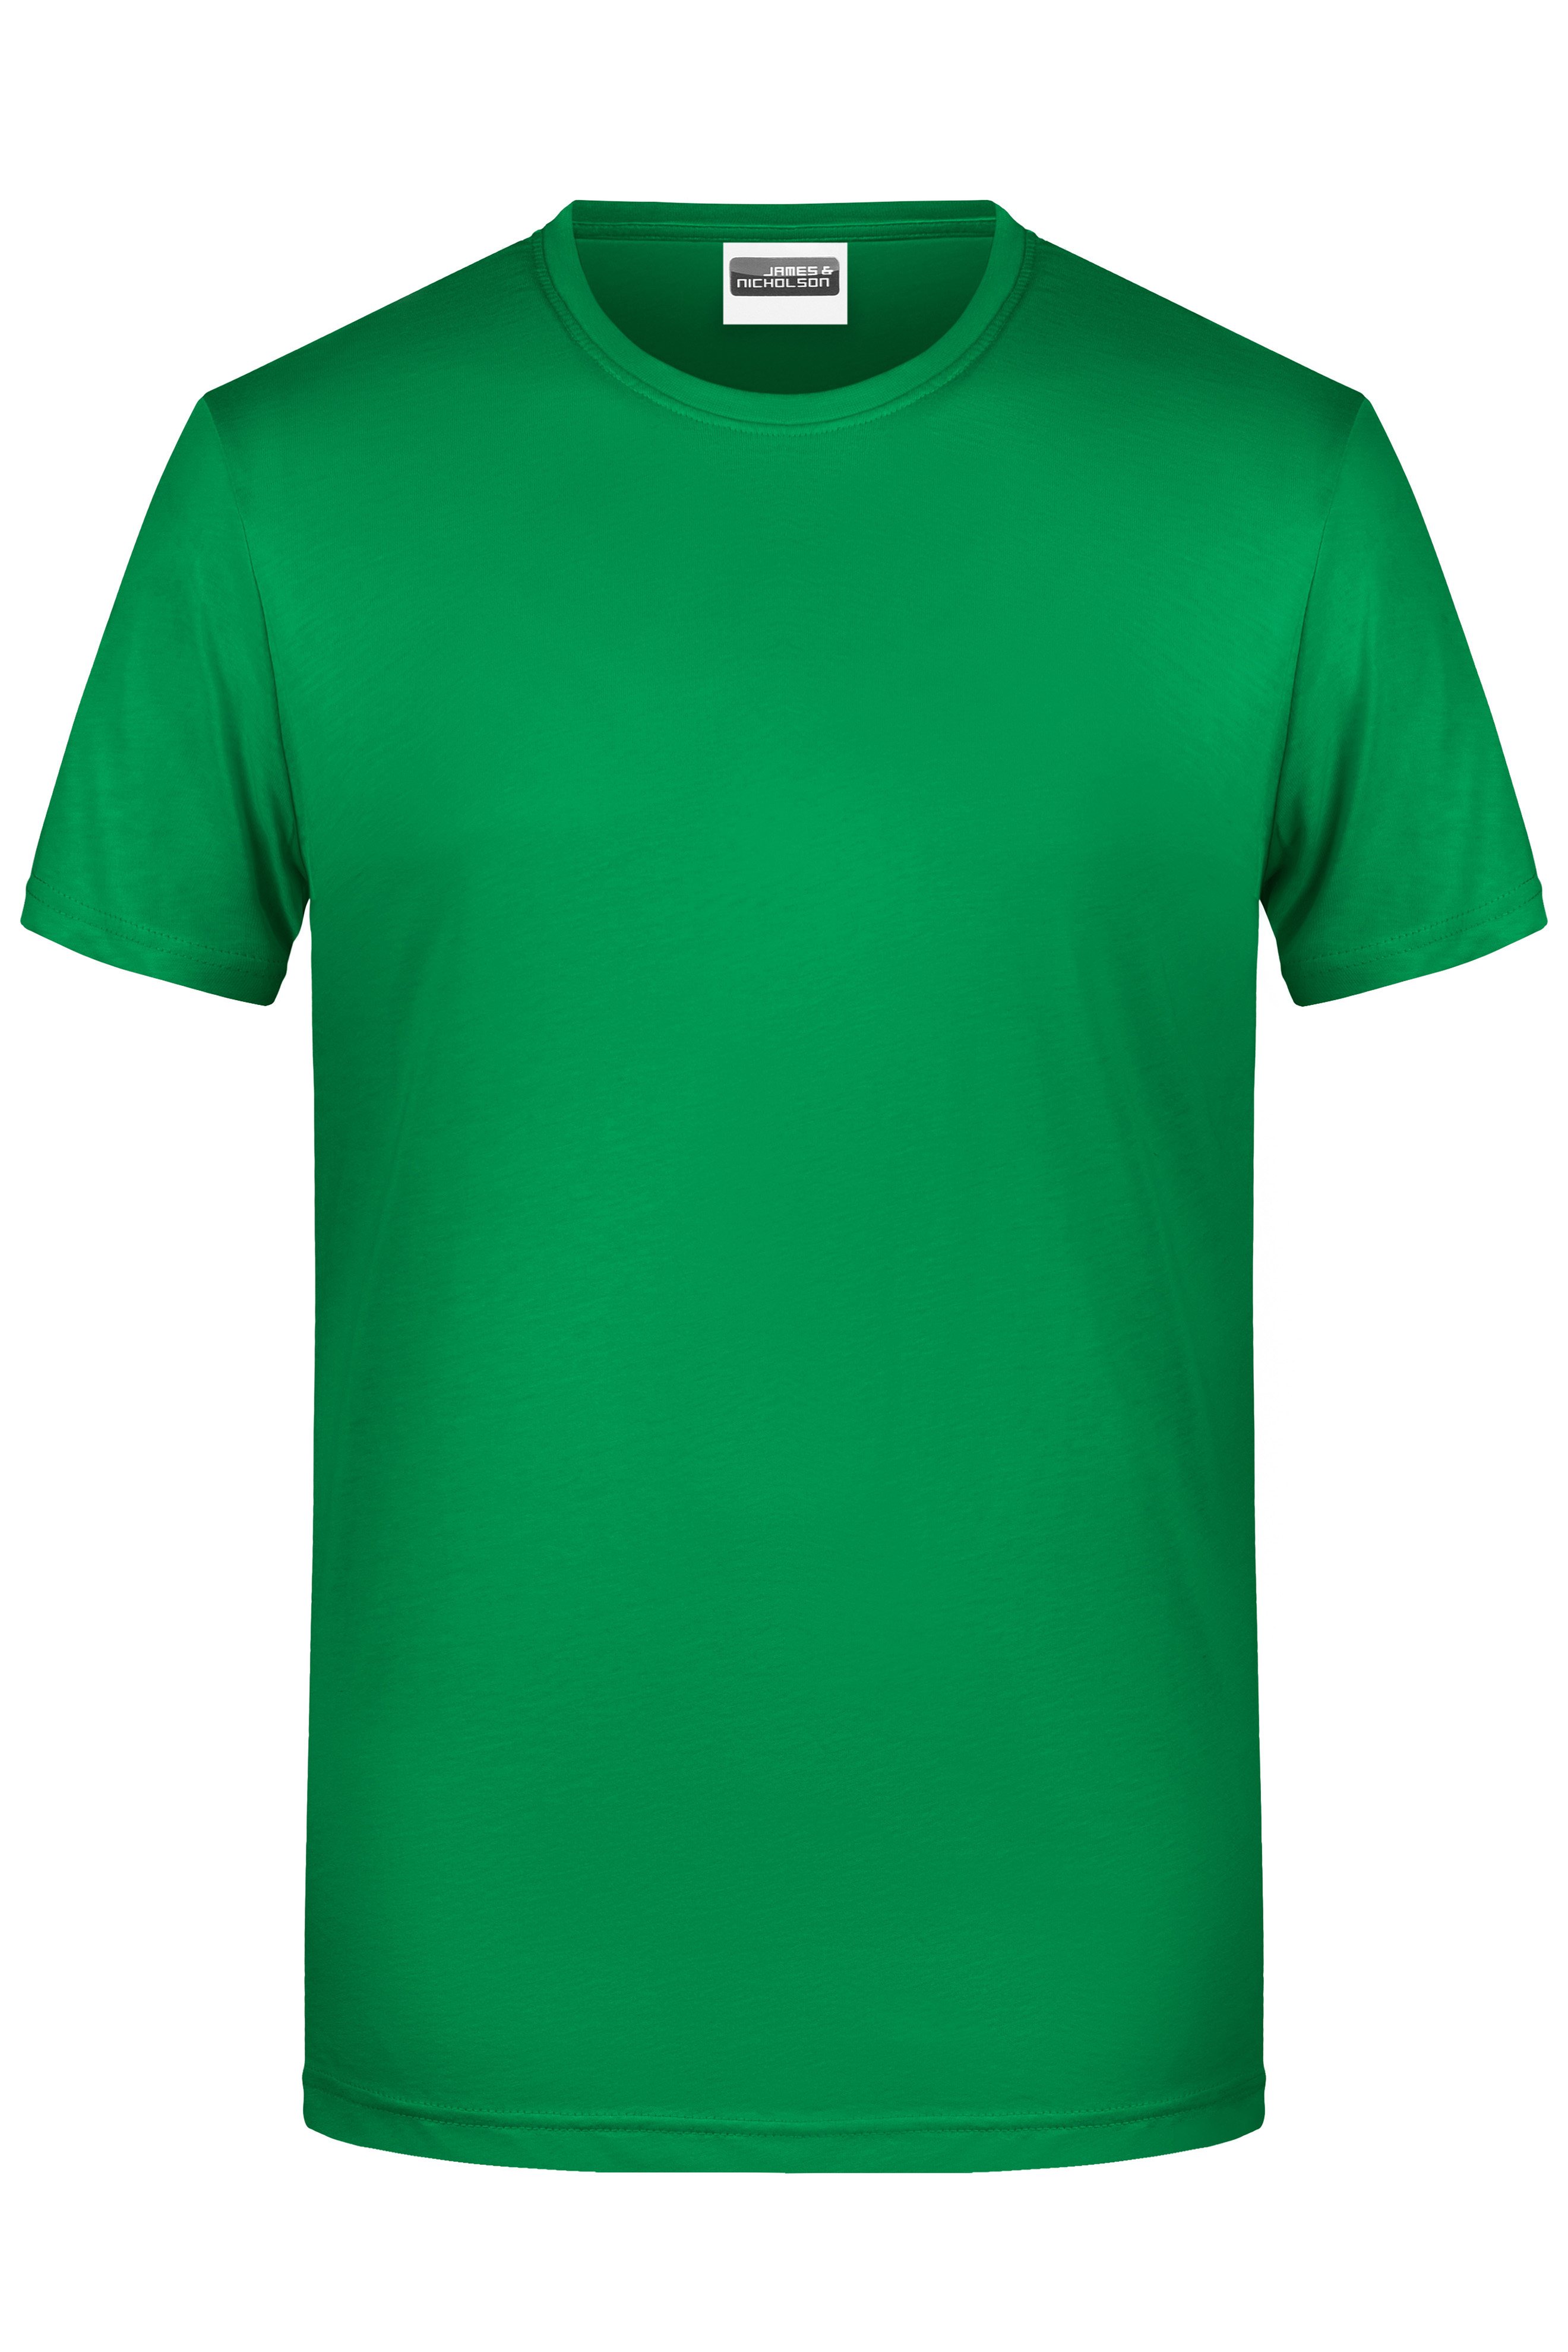 Men's Basic-T 8008 Herren T-Shirt in klassischer Form